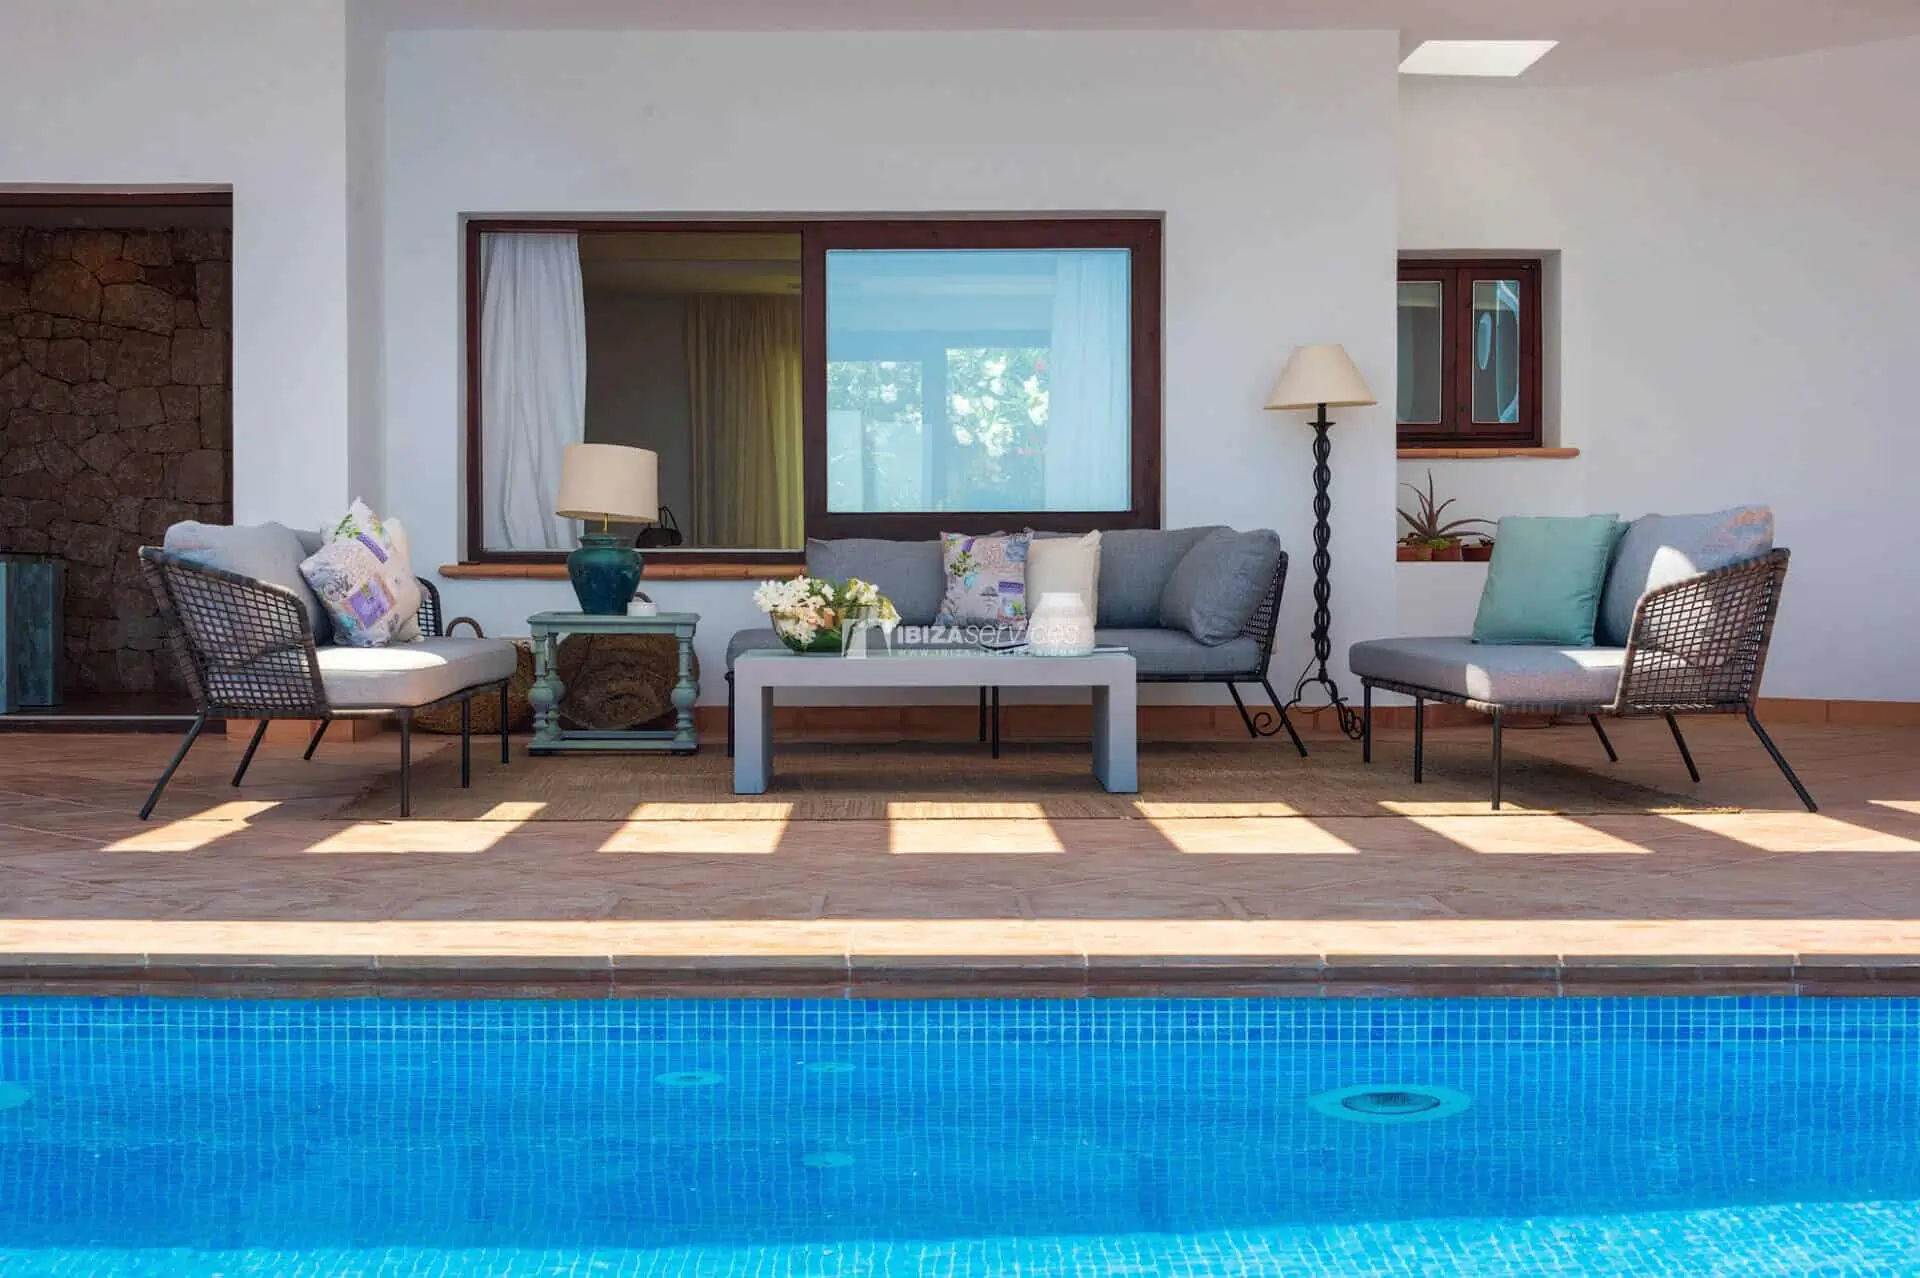 Es Cubells – Villa con piscina y ubicación excepcional en alquiler larga duracíon.